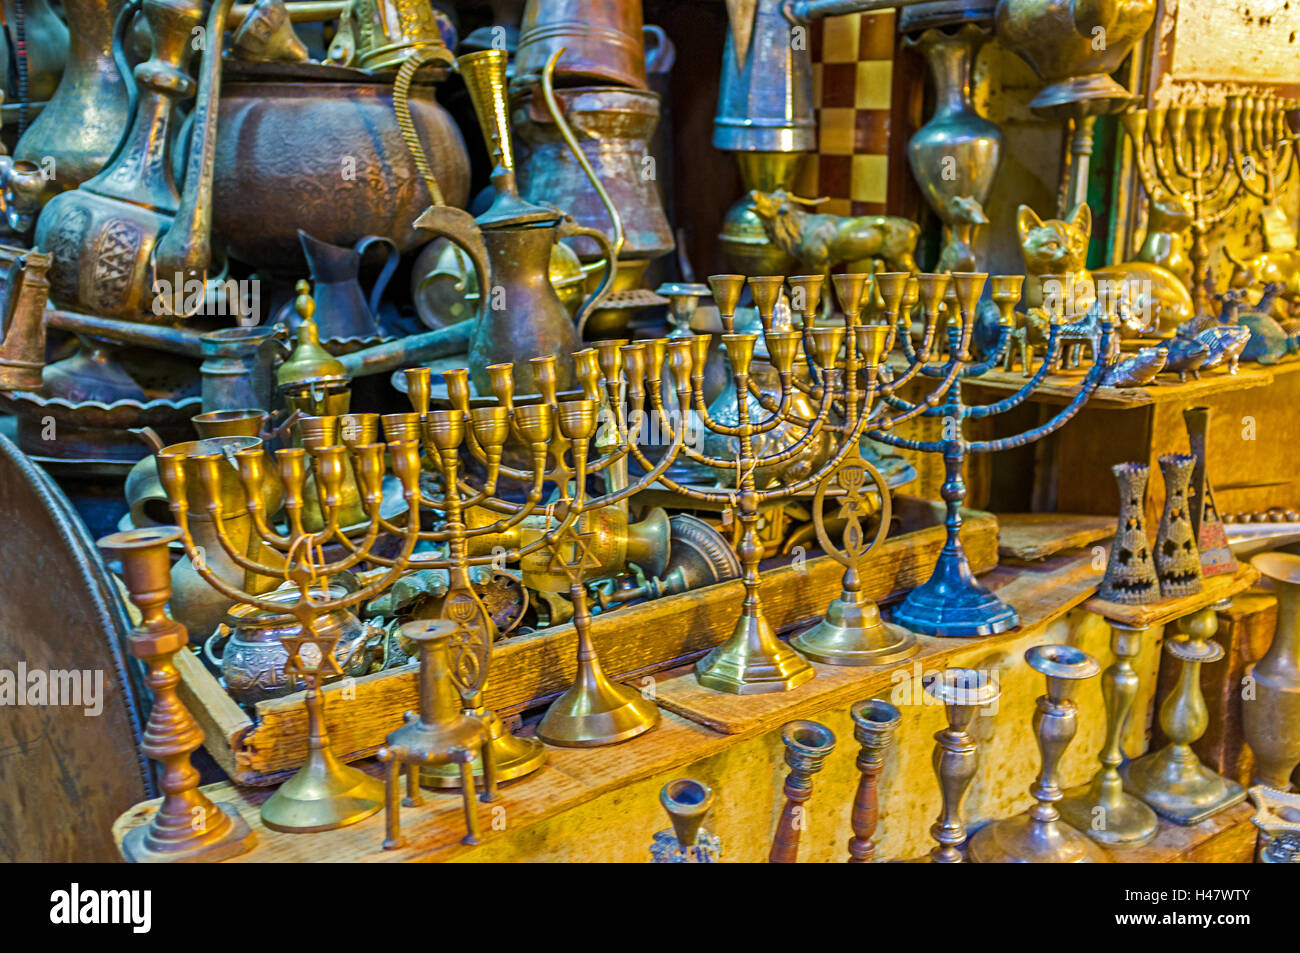 La menorah est sept-lampe (6 branches) l'Hébreu ancien chandelier, aujourd'hui très utilisé en tant que symbole et souvenir d'Israël, Jerusal Banque D'Images